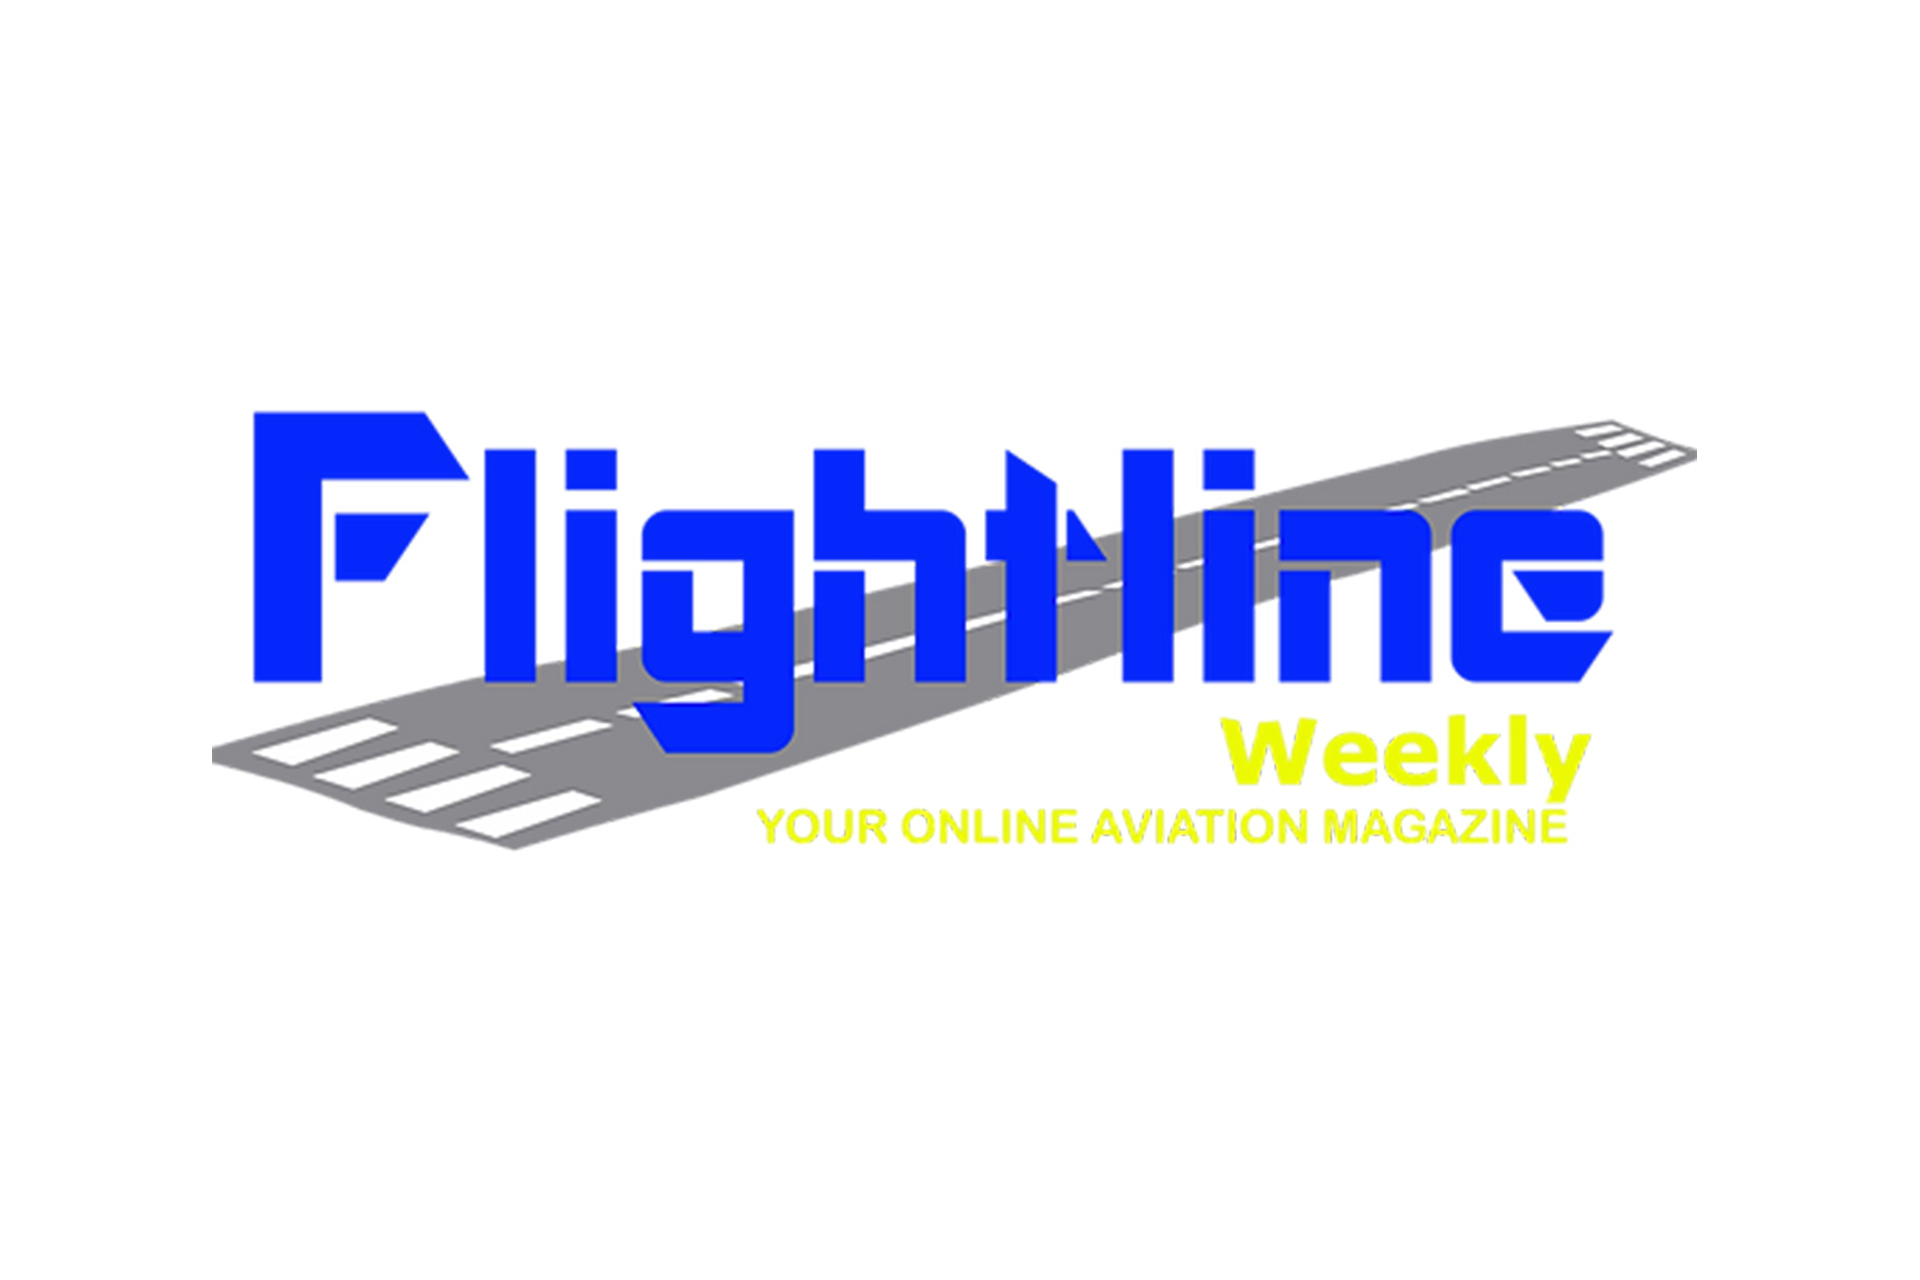 Flightline-Weekly-logo